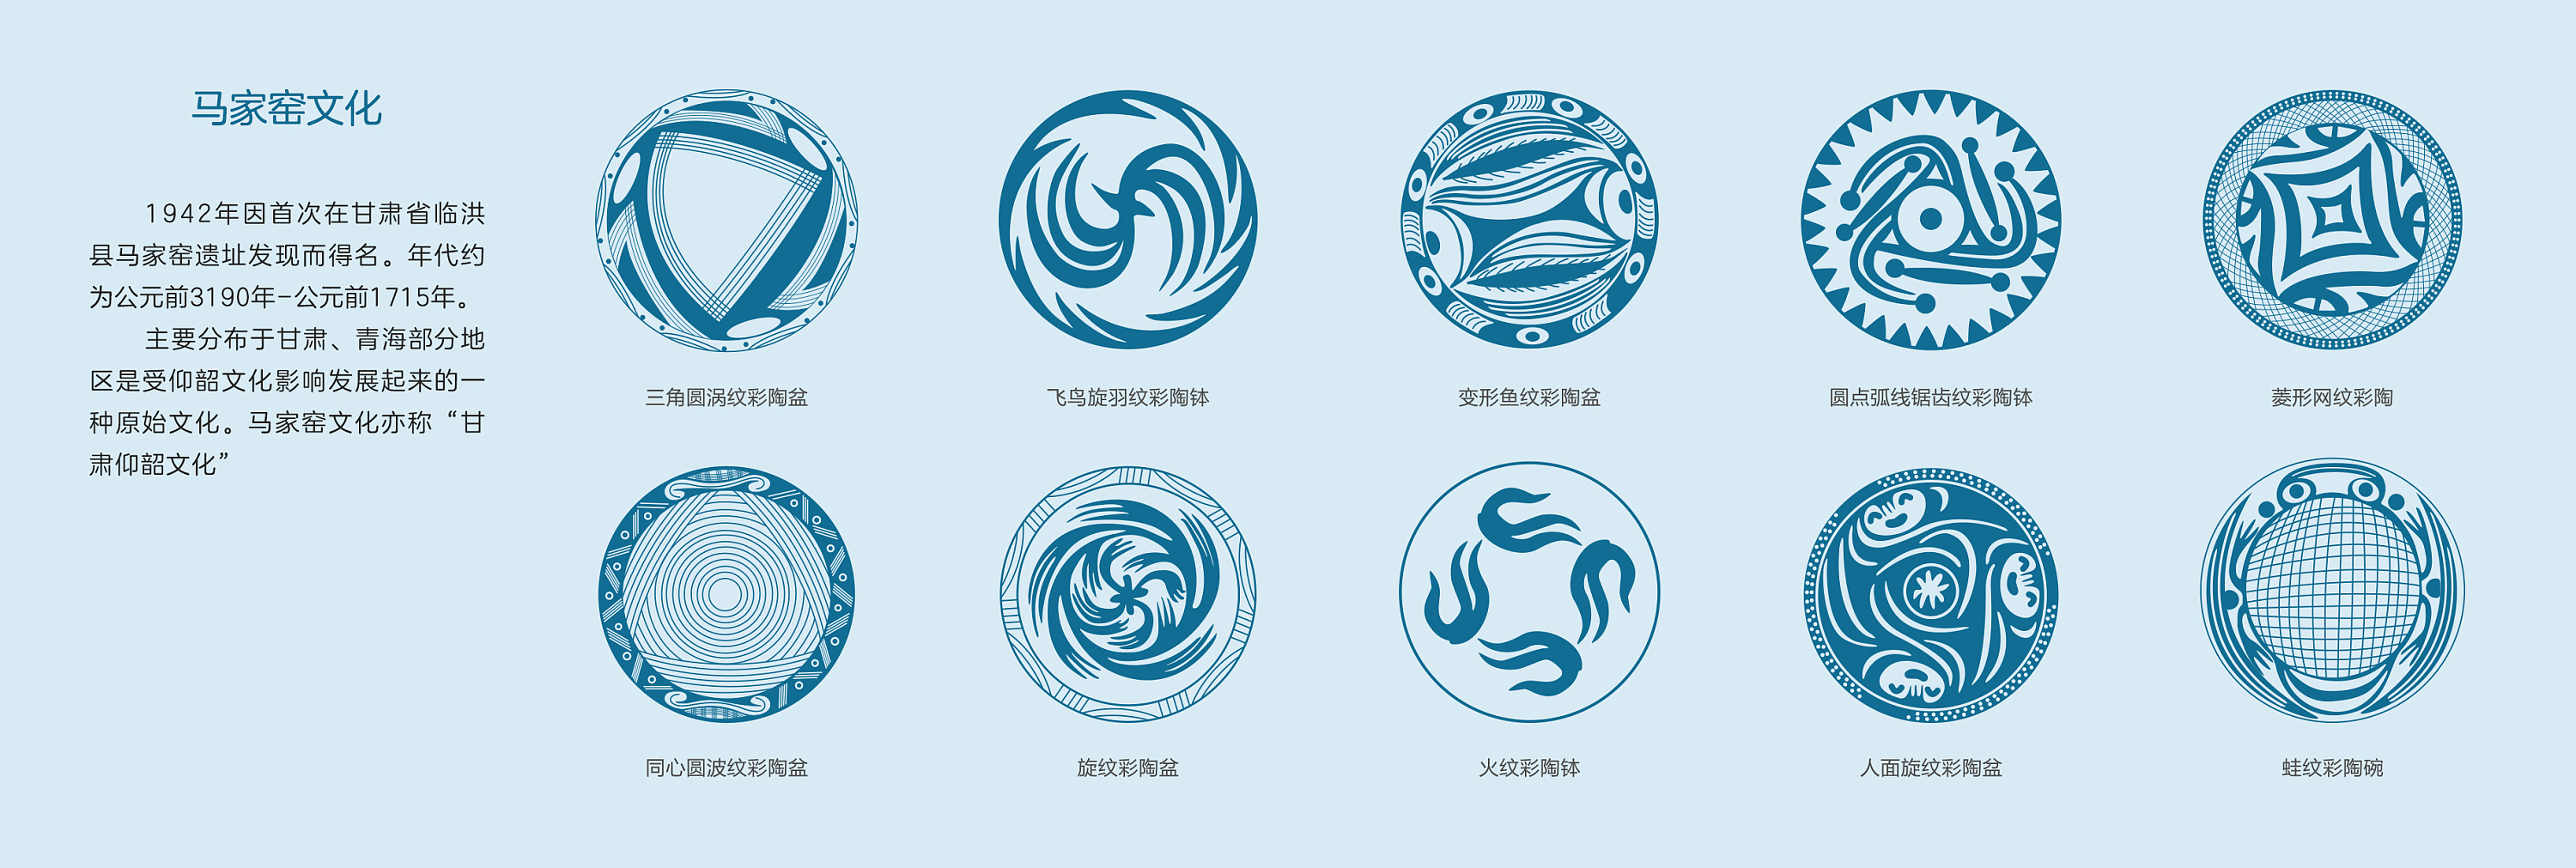 中国新石器时代·陶器纹样研究